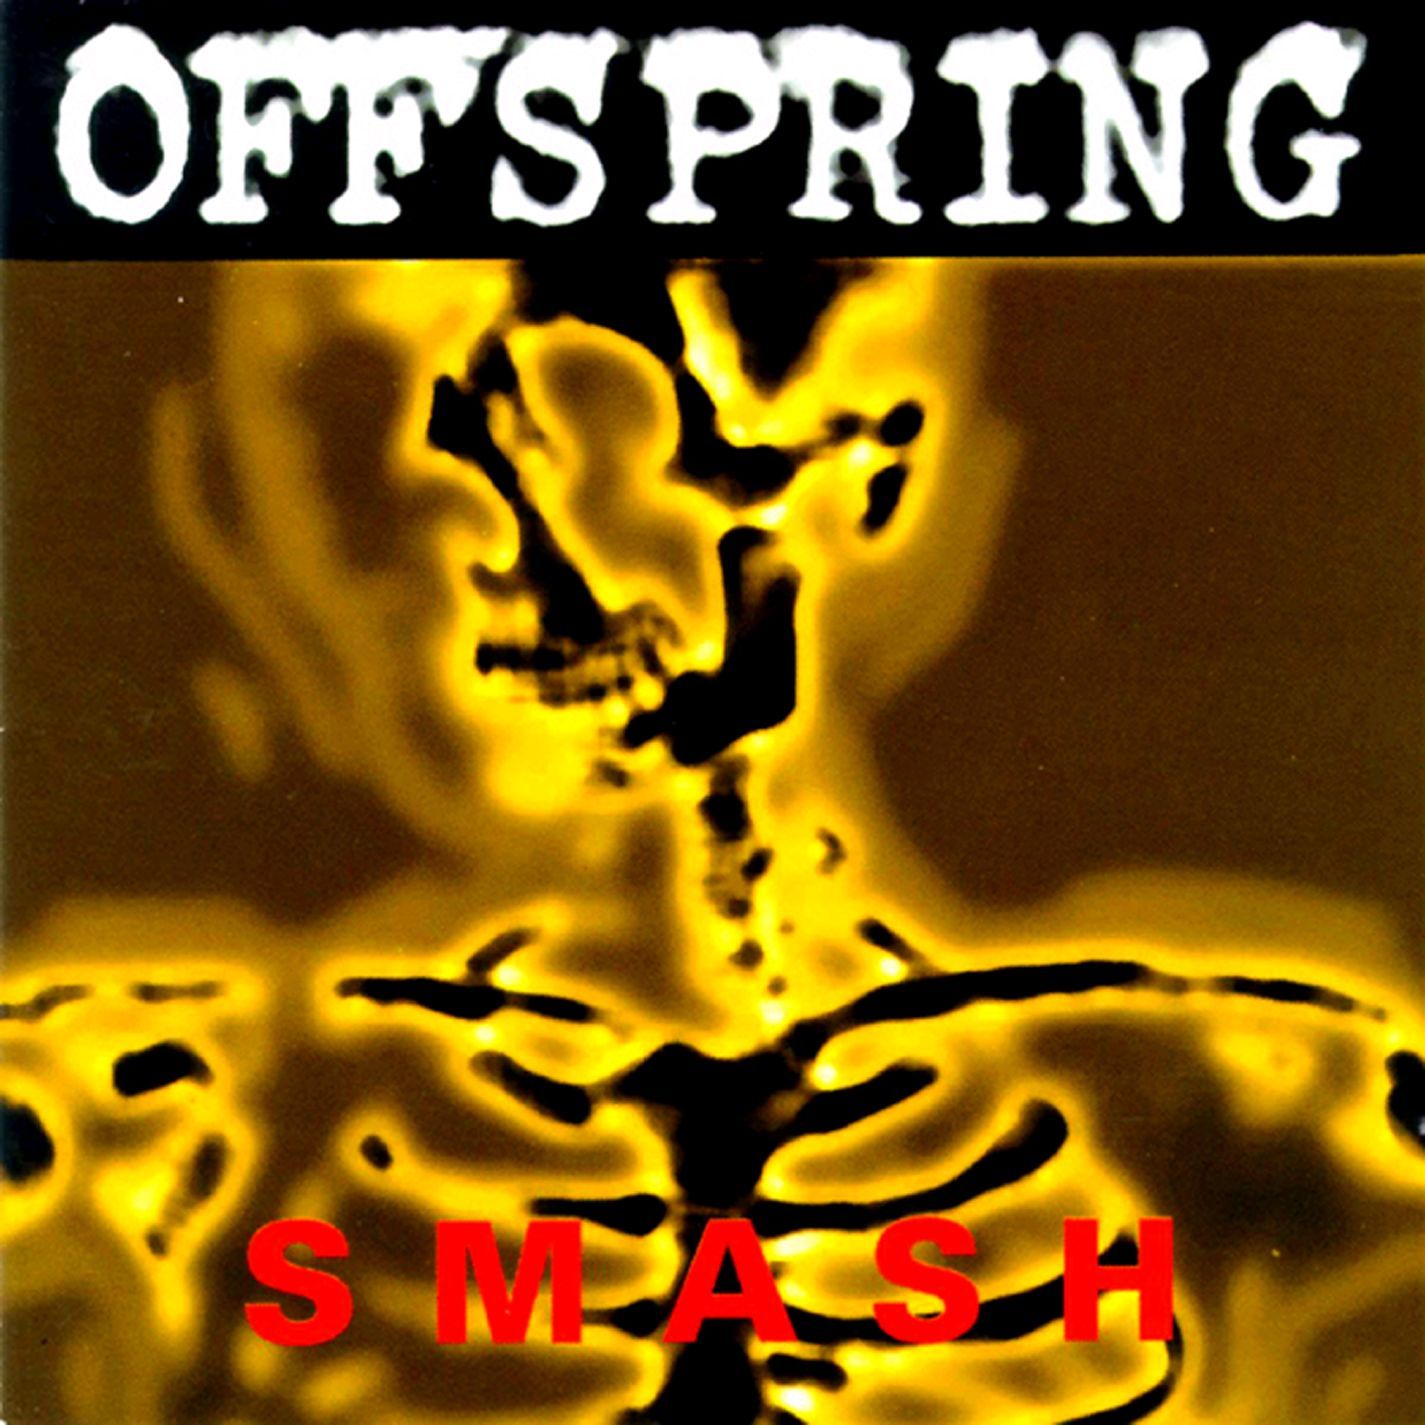 The Offspring "Smash" LP